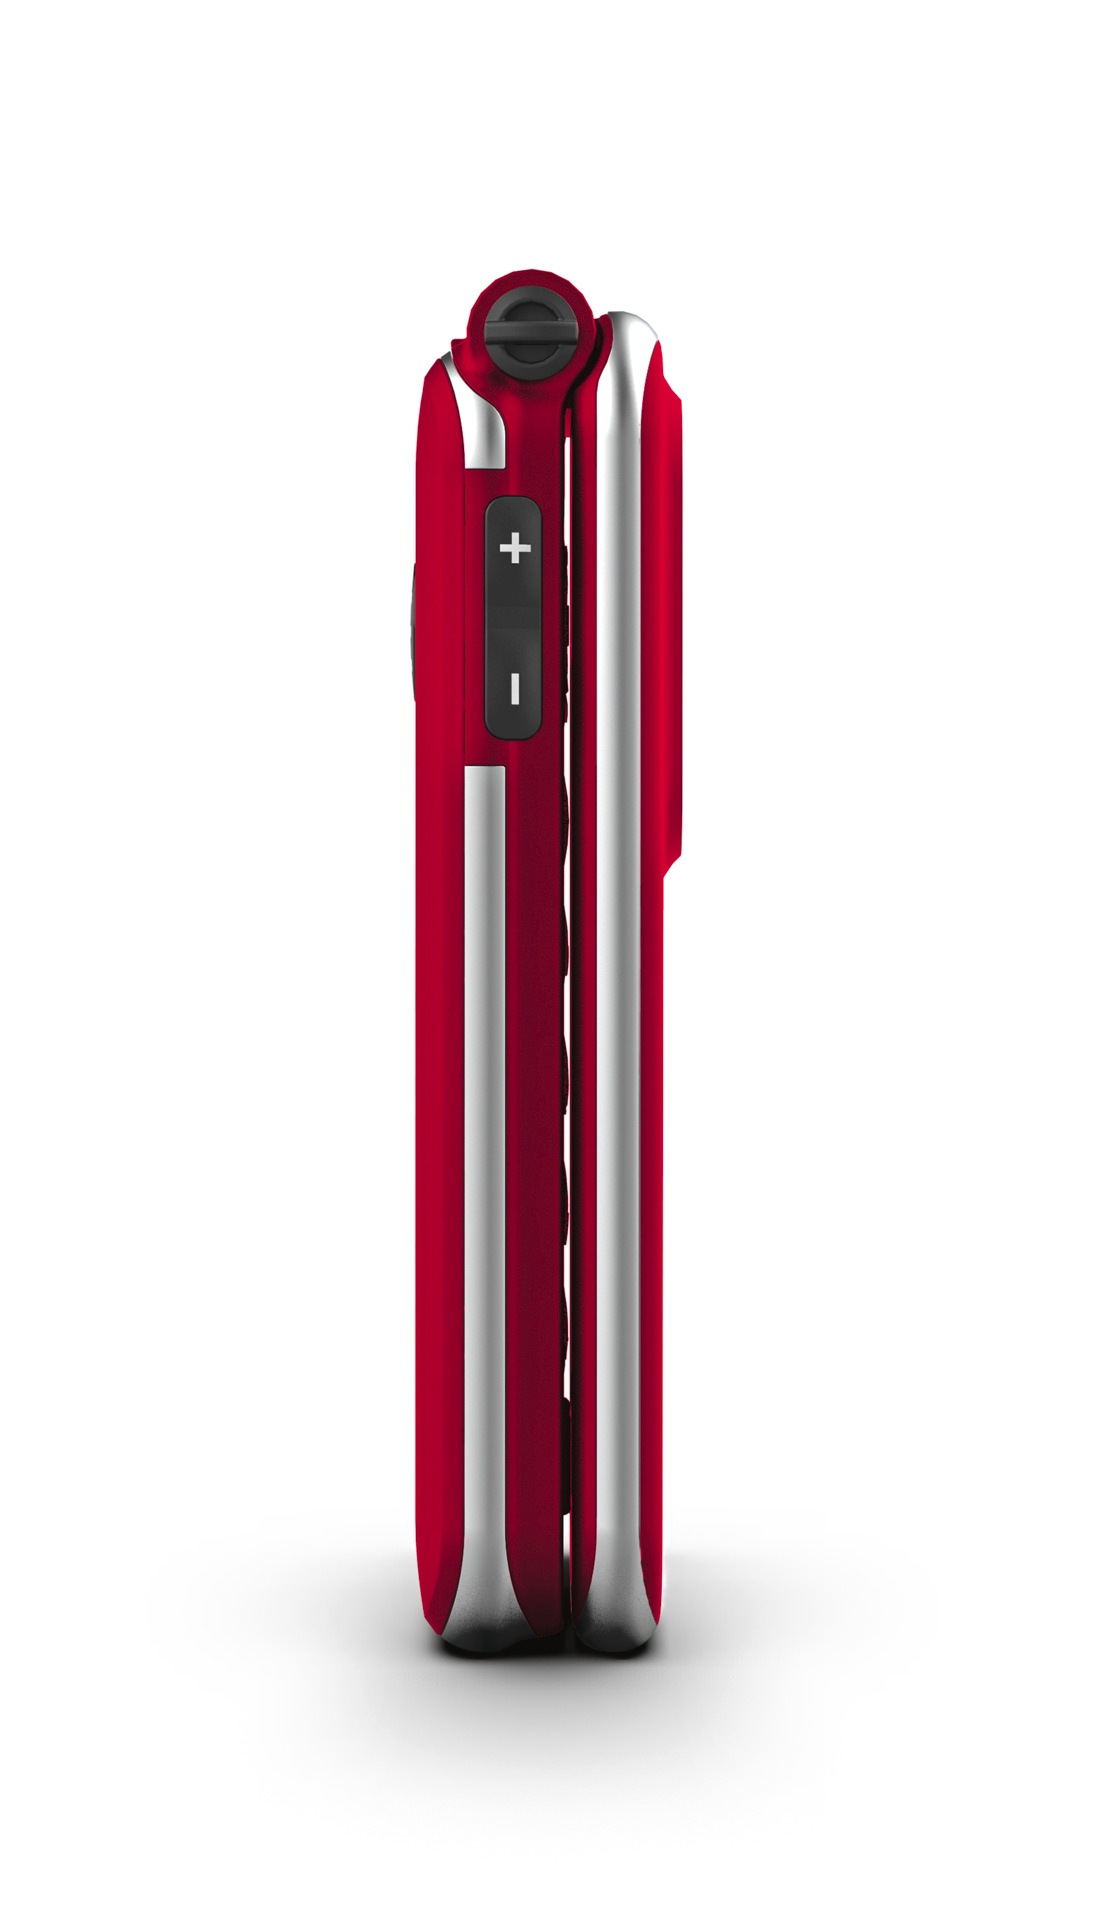 Emporia Smartphone »JOY V228-2G«, Rot, 7,1 cm/2,8 Zoll, 0,128 GB Speicherplatz